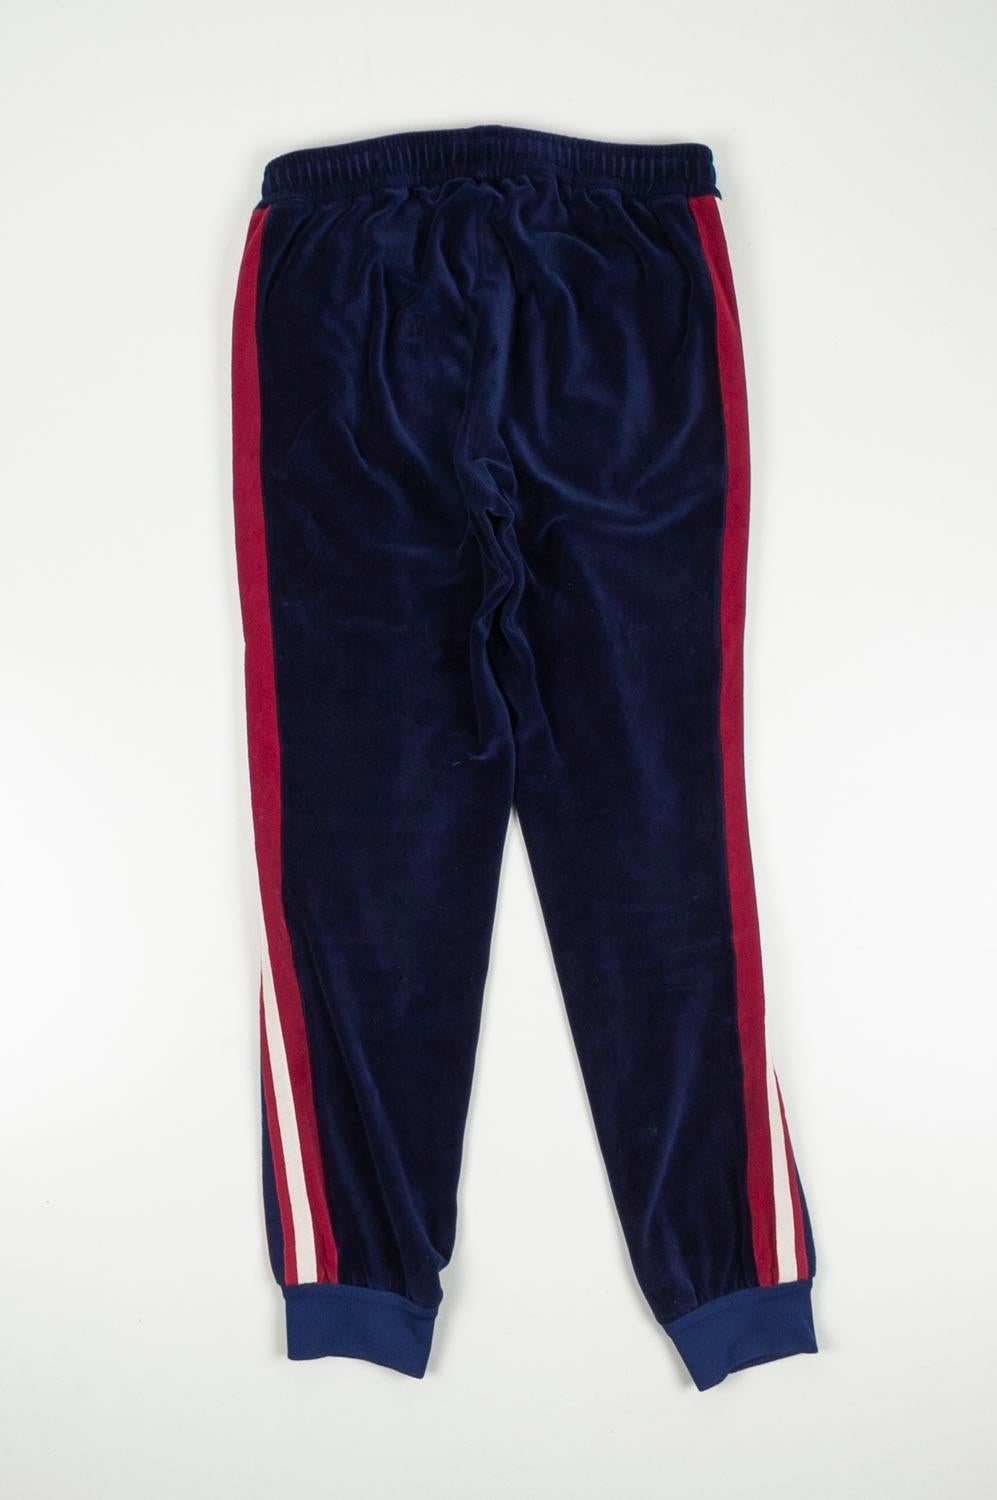 Black Gucci Velour Men Sweatpants Tracking Pants Size S, S284 For Sale